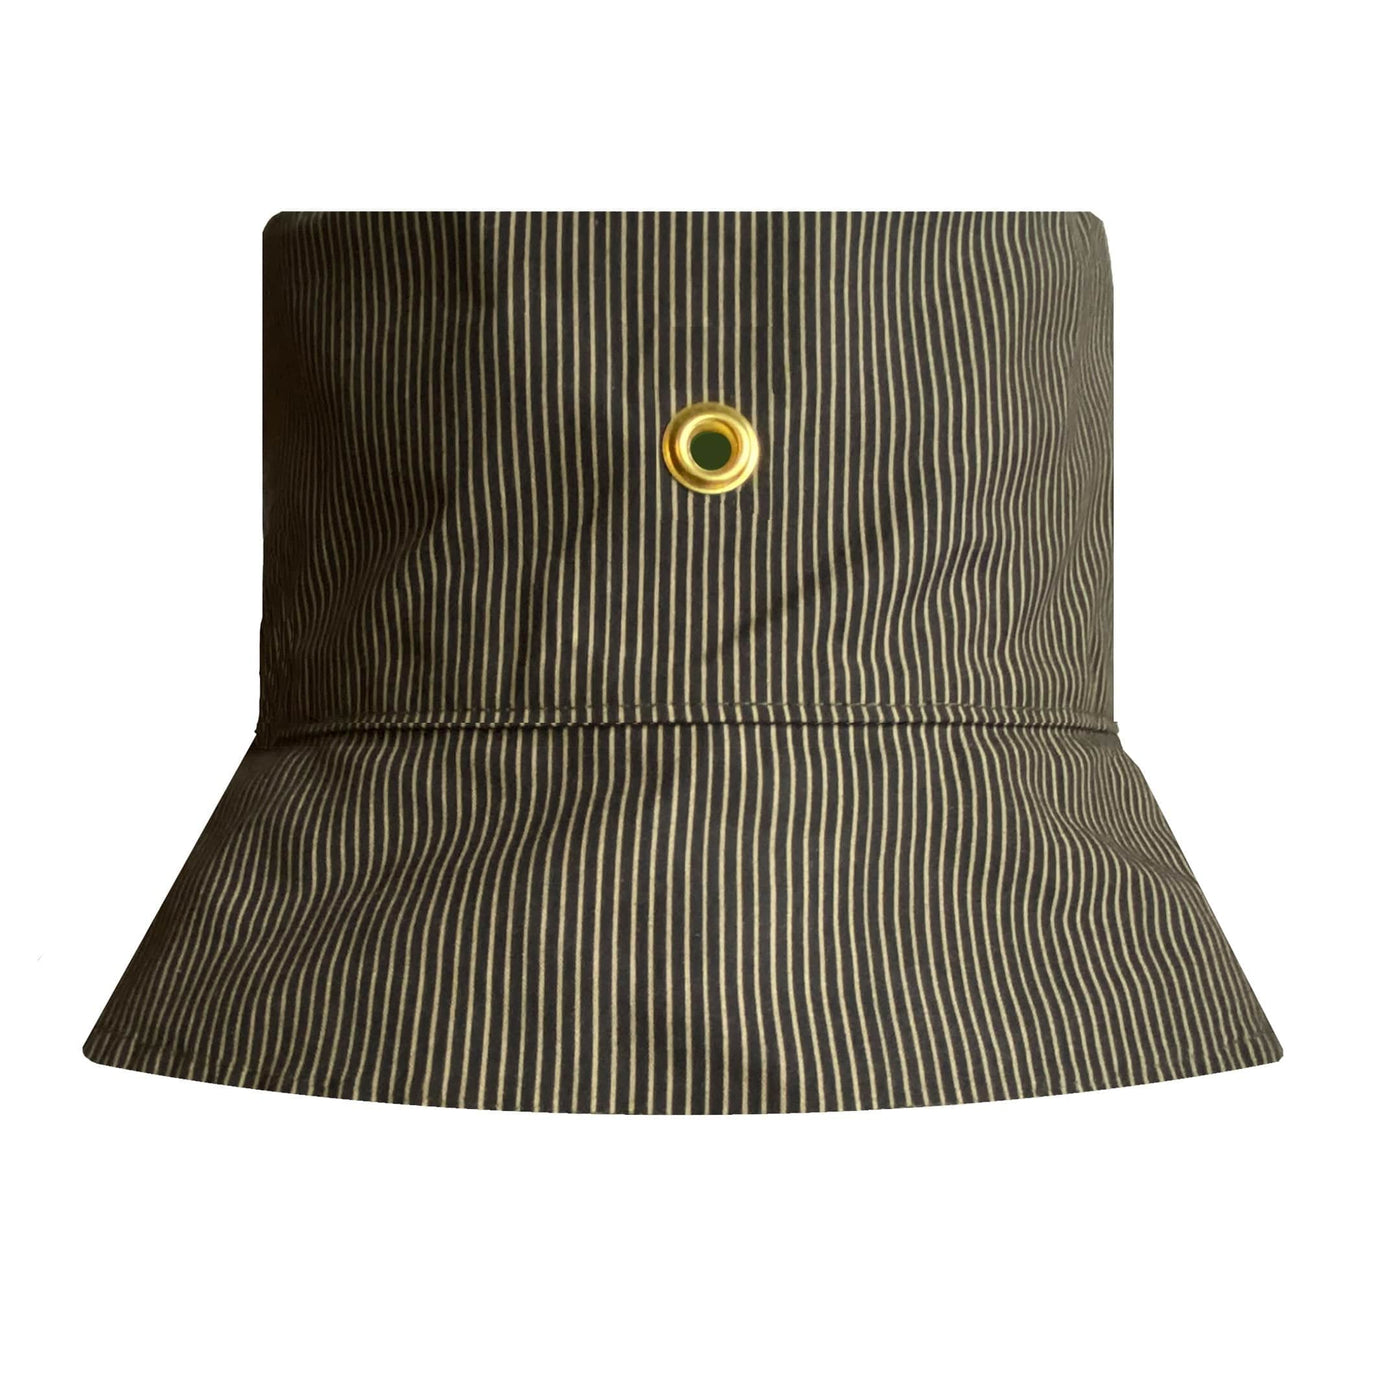 FELLER Hats Skinny Stripe / L Blaine Waxed Cotton Bucket Hat